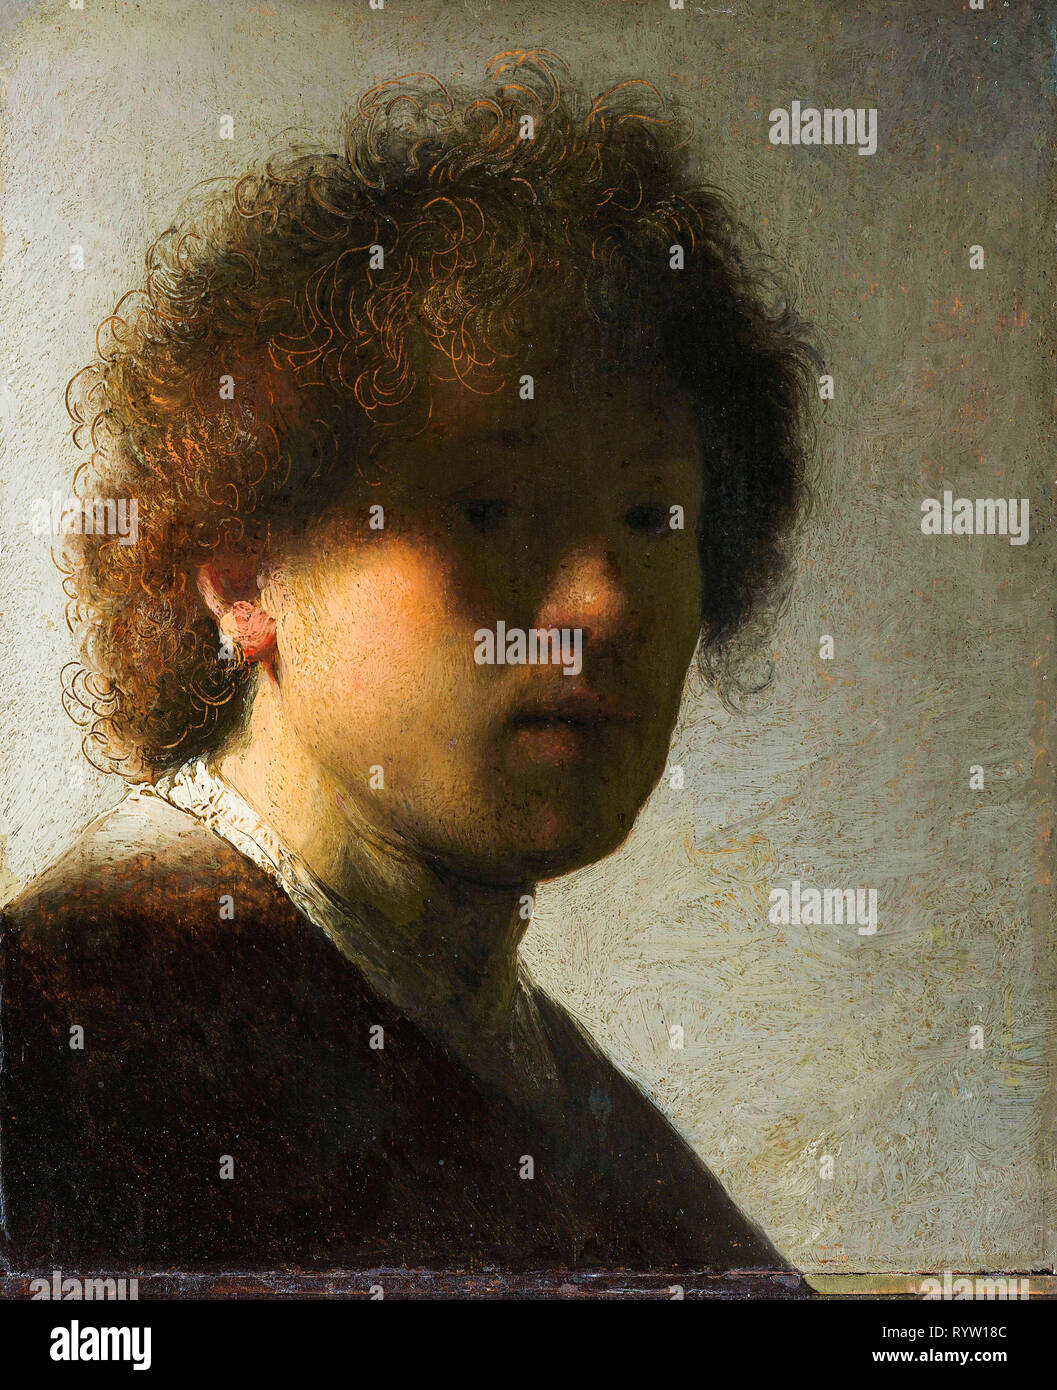 Rembrandt van Rijn (1606-1669), self portrait, c. 1628 Stock Photo